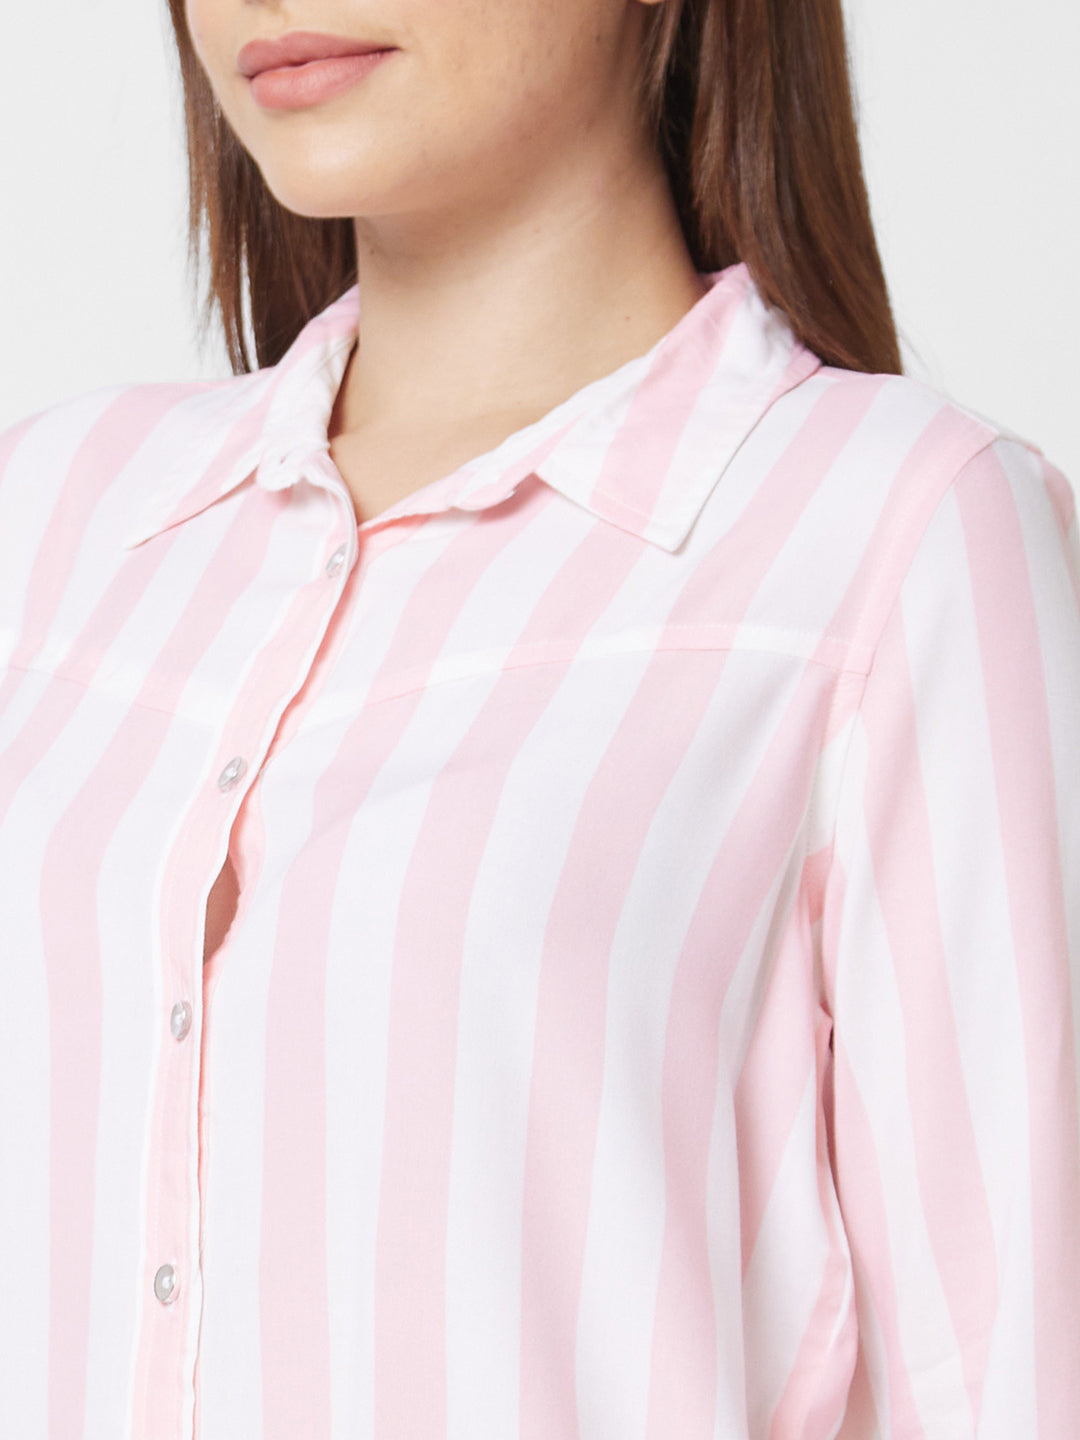 Spykar Full Sleeve Striped Pink Shirt For Women